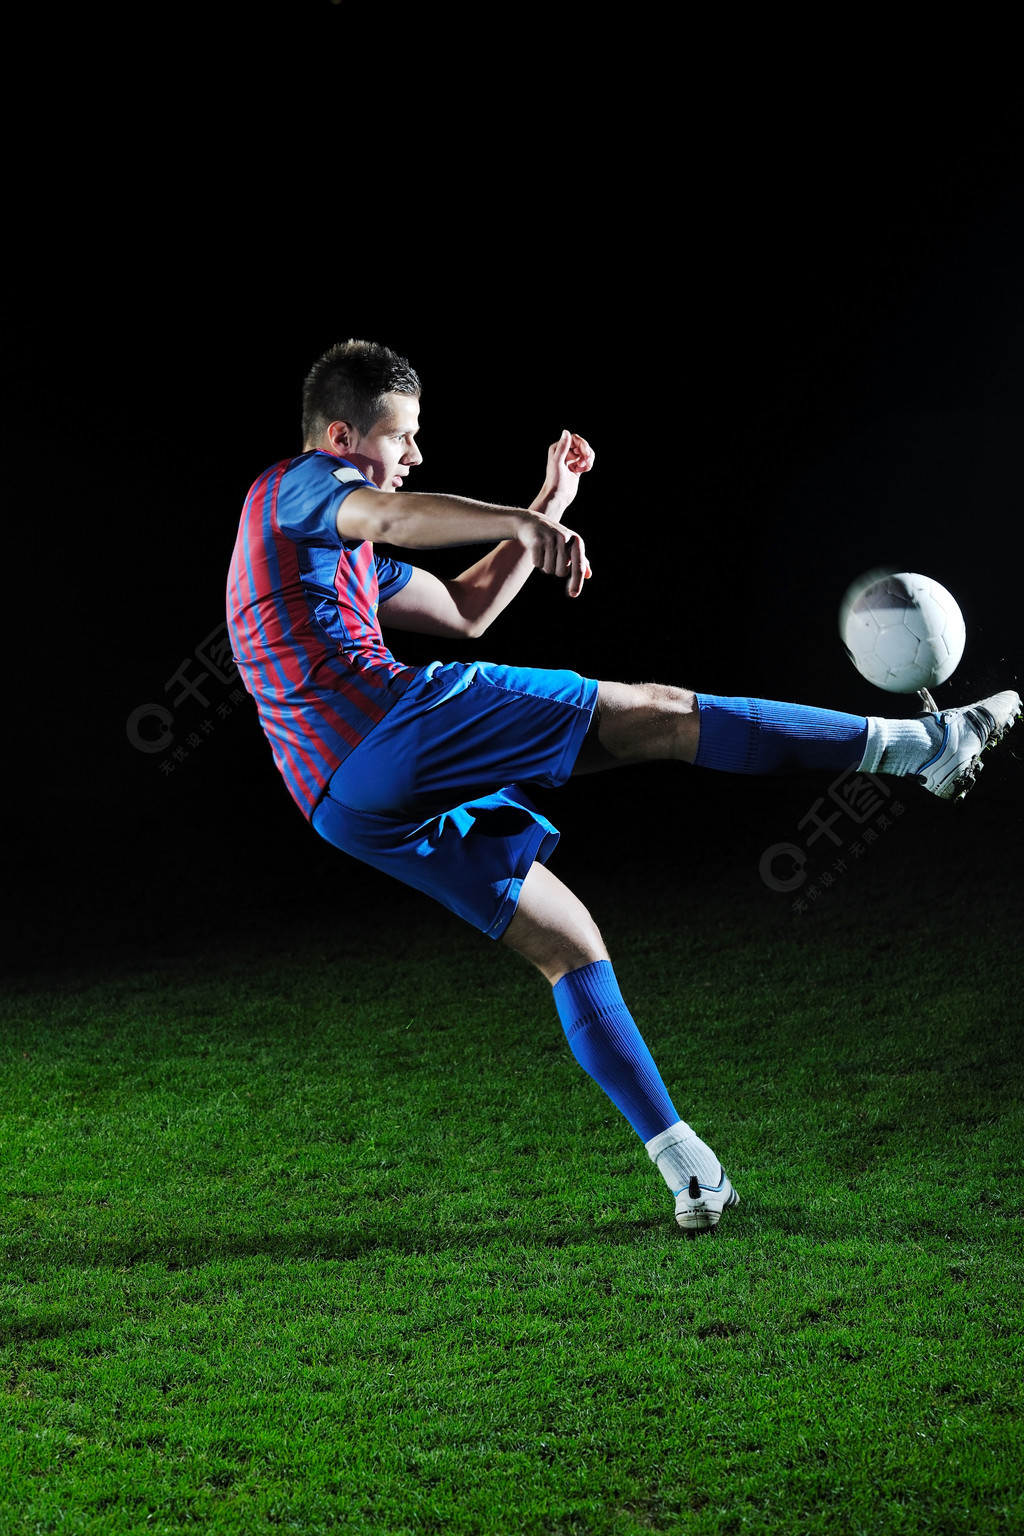 踢足球的人(足球是多少个人踢的)，踢足球的人数，足球运动的基本形式，足球运动，探索参与人数与基本形式  第1张